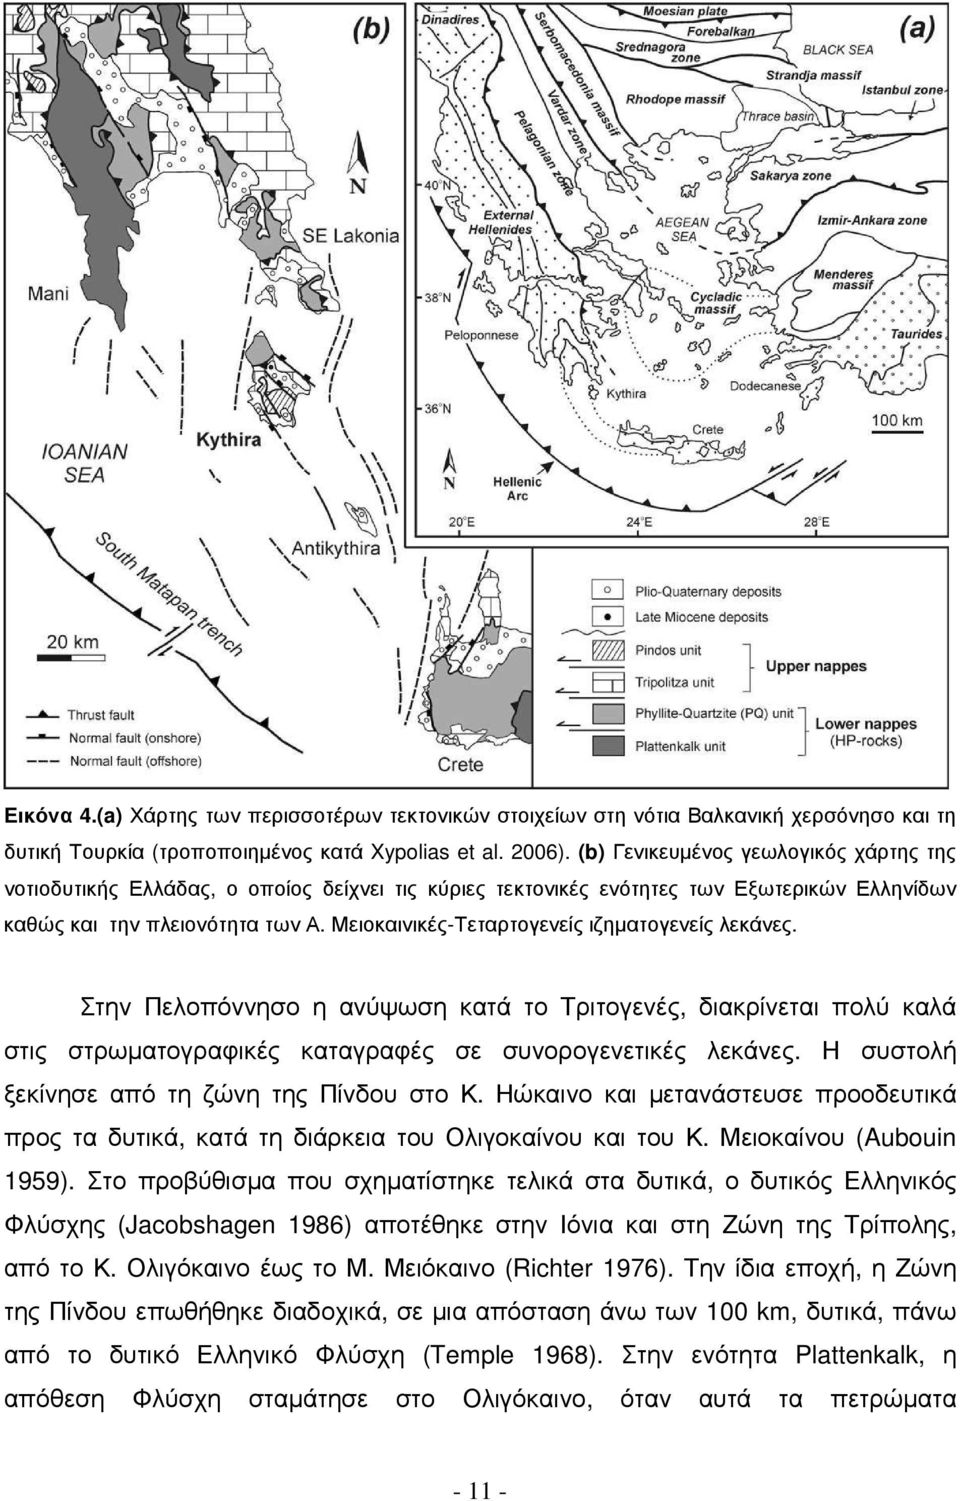 Μειοκαινικές-Τεταρτογενείς ιζηµατογενείς λεκάνες. Στην Πελοπόννησο η ανύψωση κατά το Τριτογενές, διακρίνεται πολύ καλά στις στρωµατογραφικές καταγραφές σε συνορογενετικές λεκάνες.